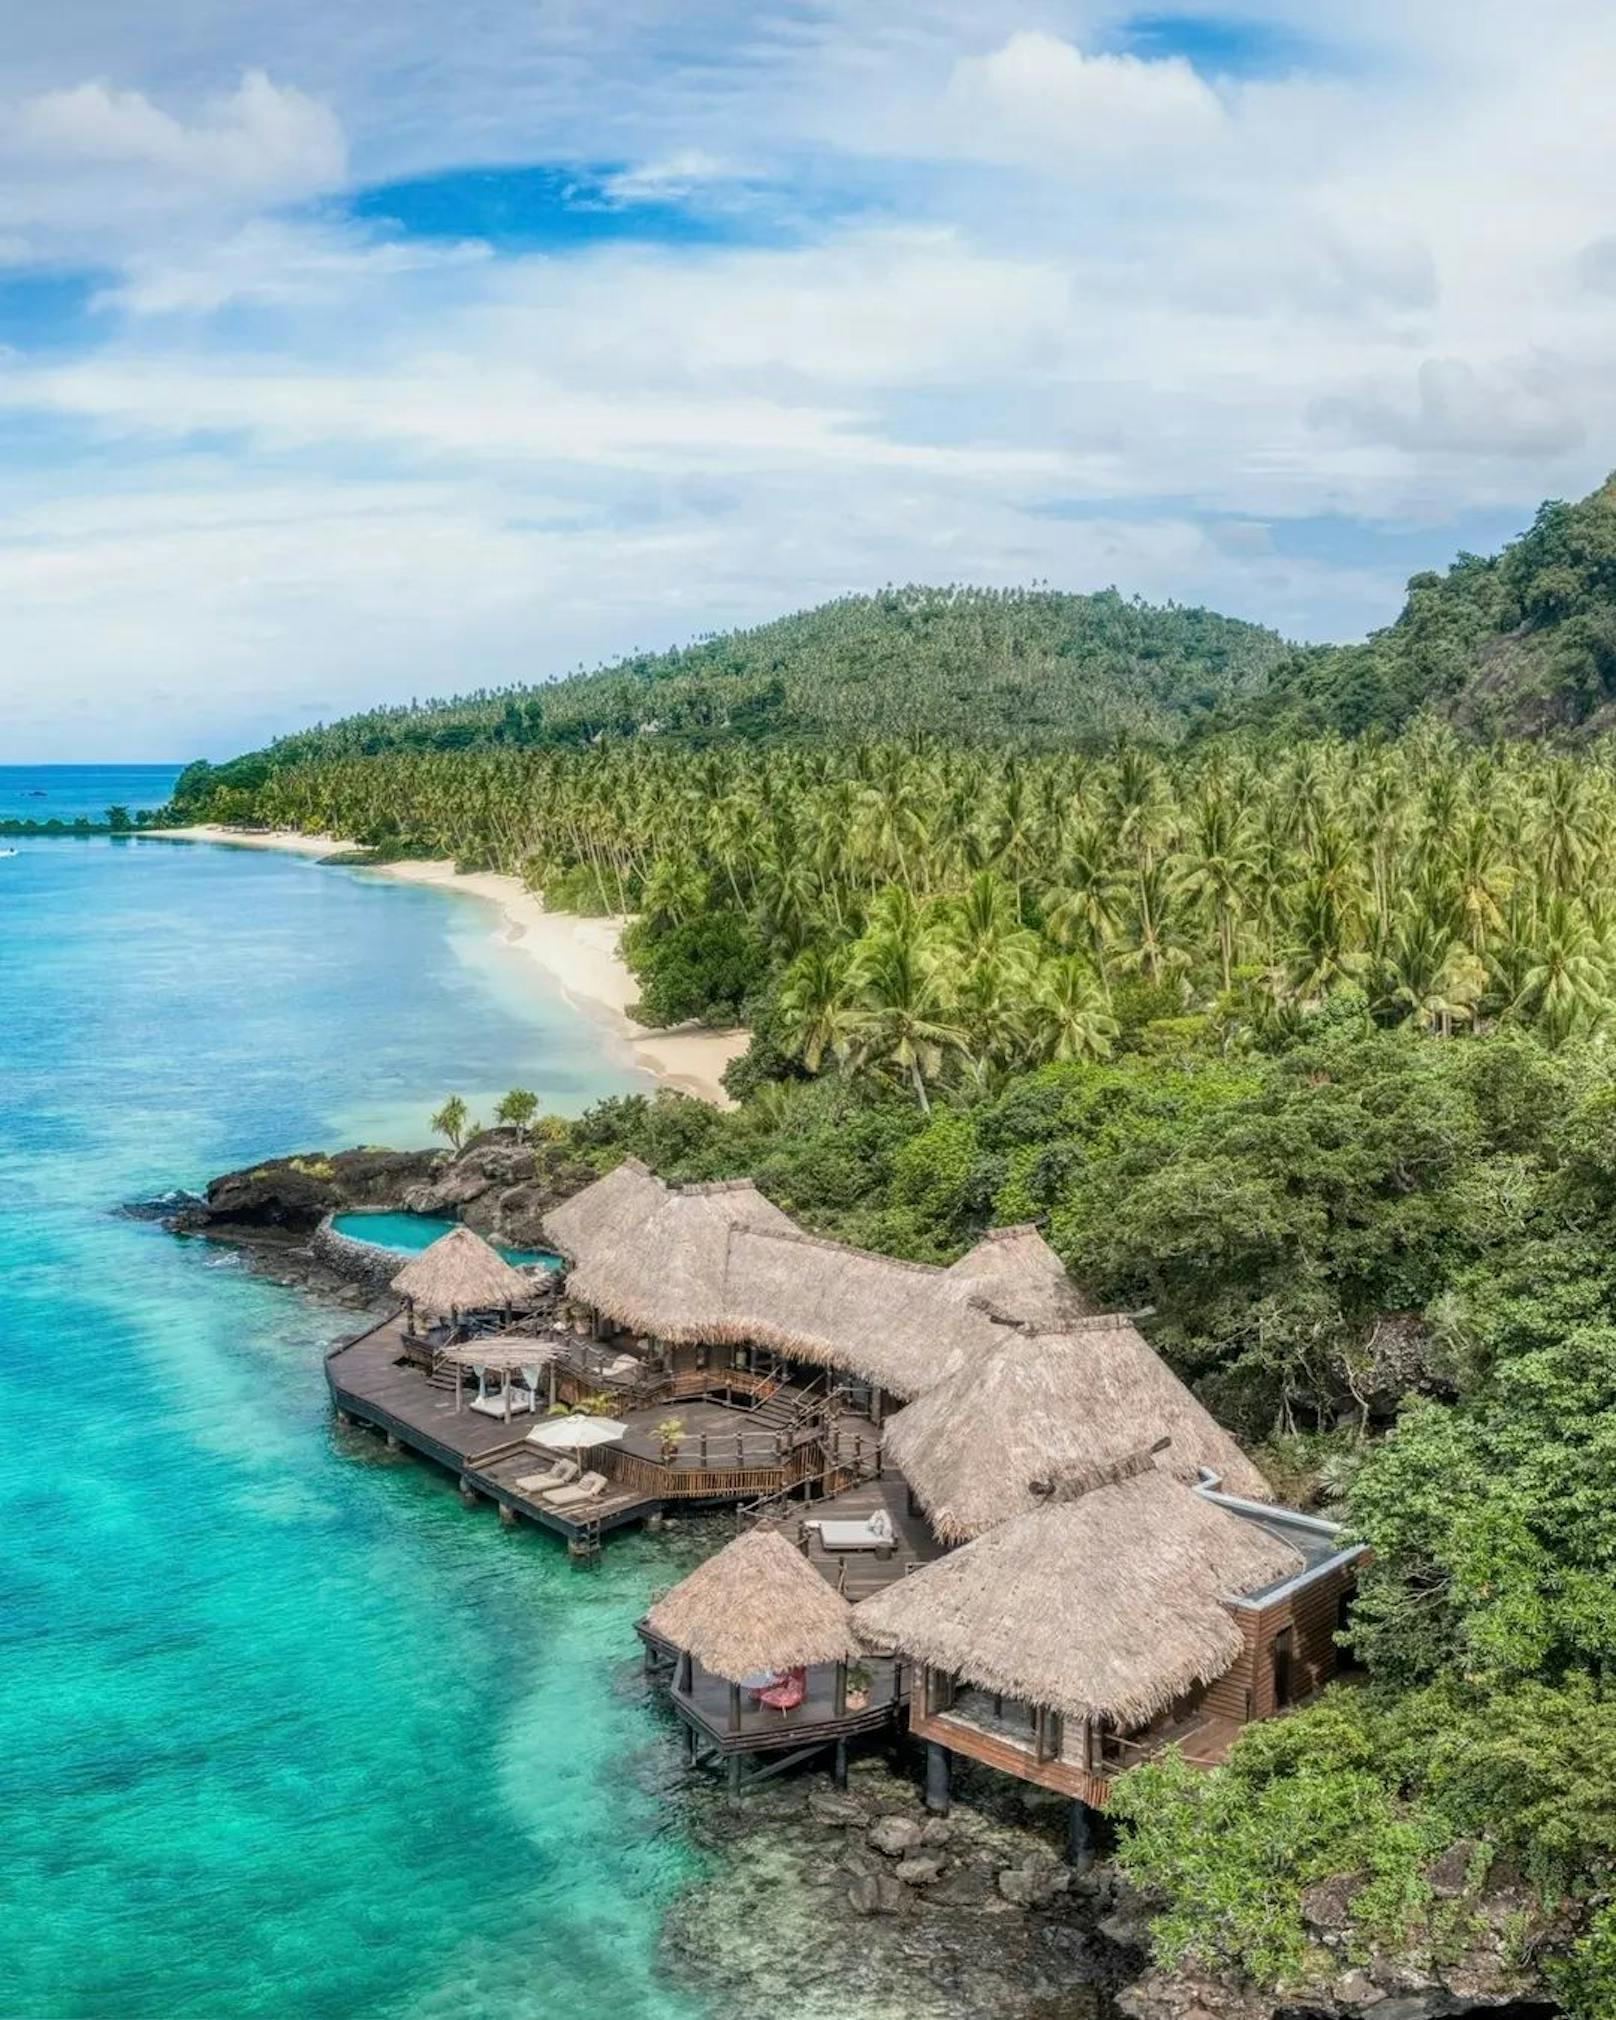 Das Laucala Island Resort gehört zu den Leading Hotels of the World und zeichnet sich vor allem durch seine atemberaubende Lage im Paradies aus.